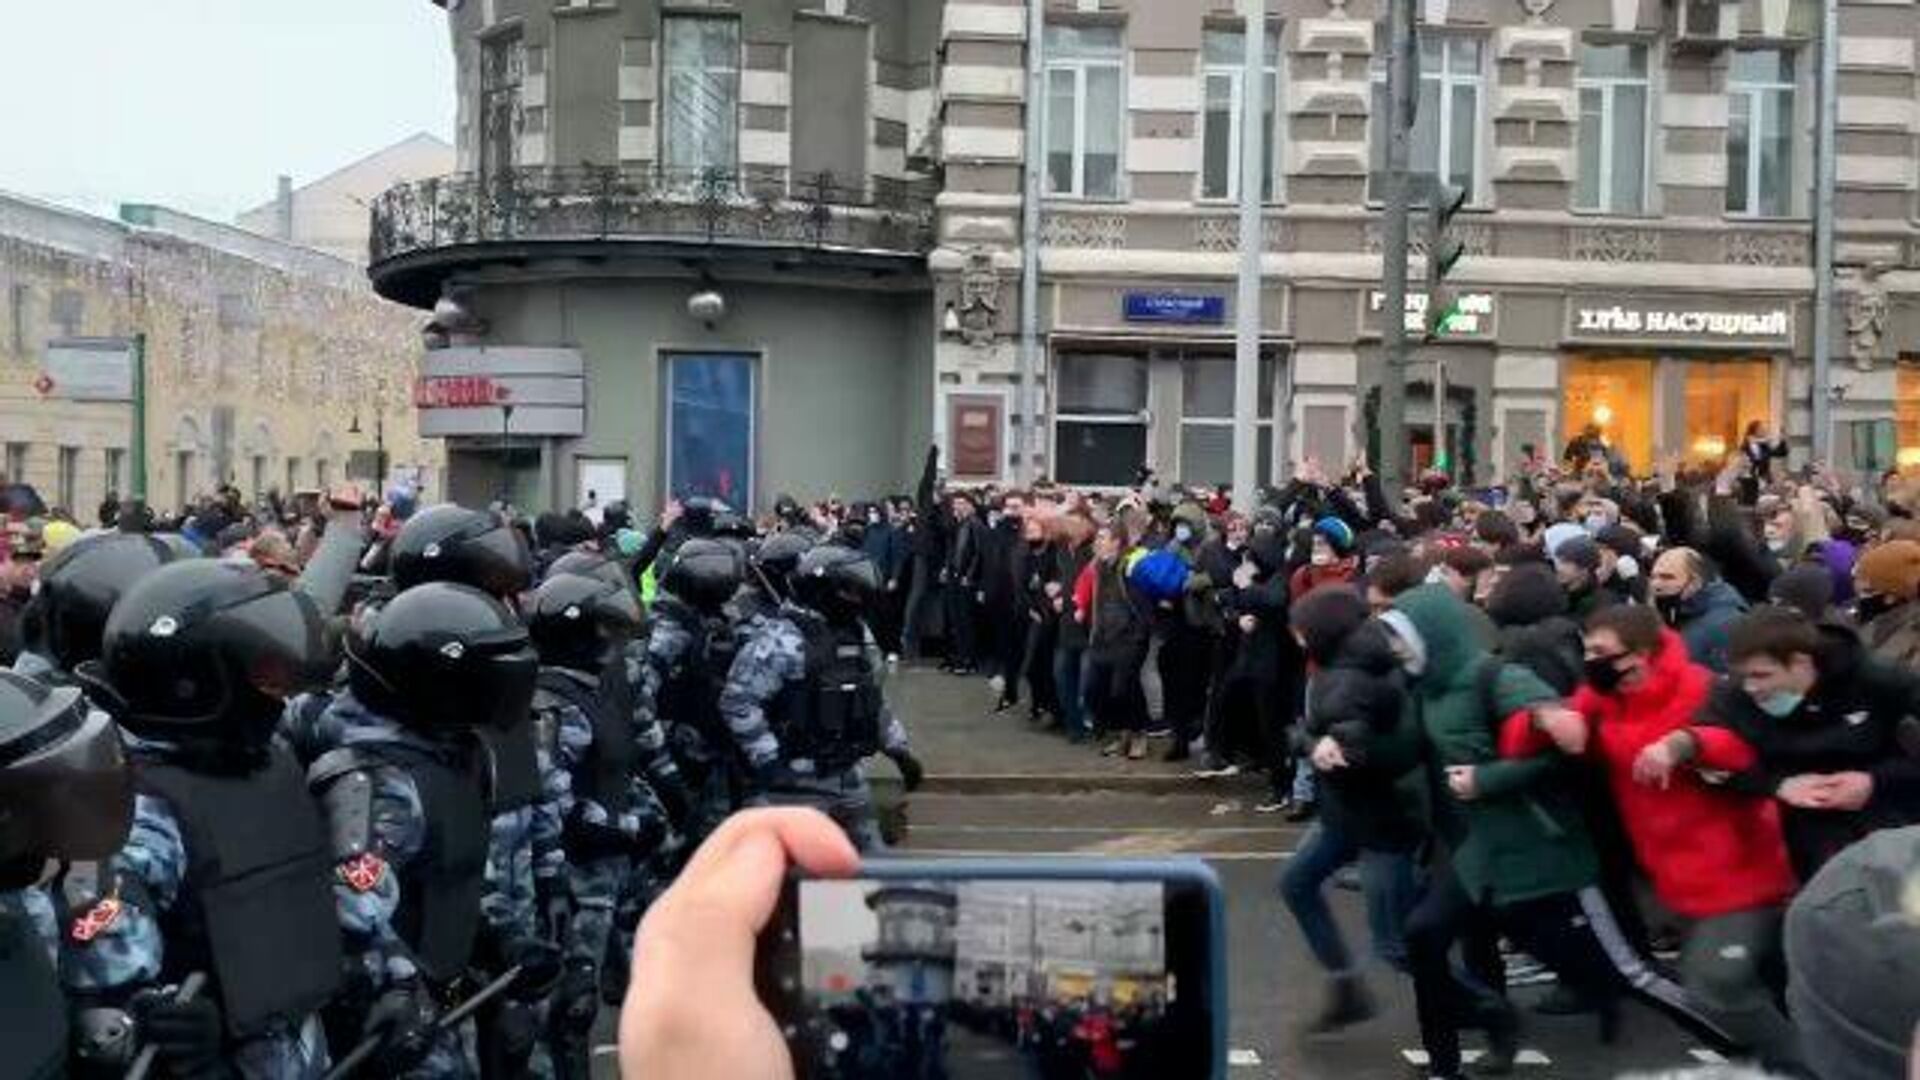 Участники акции стенкой напали на кордон полиции на Пушкинской площади - РИА Новости, 1920, 23.01.2021